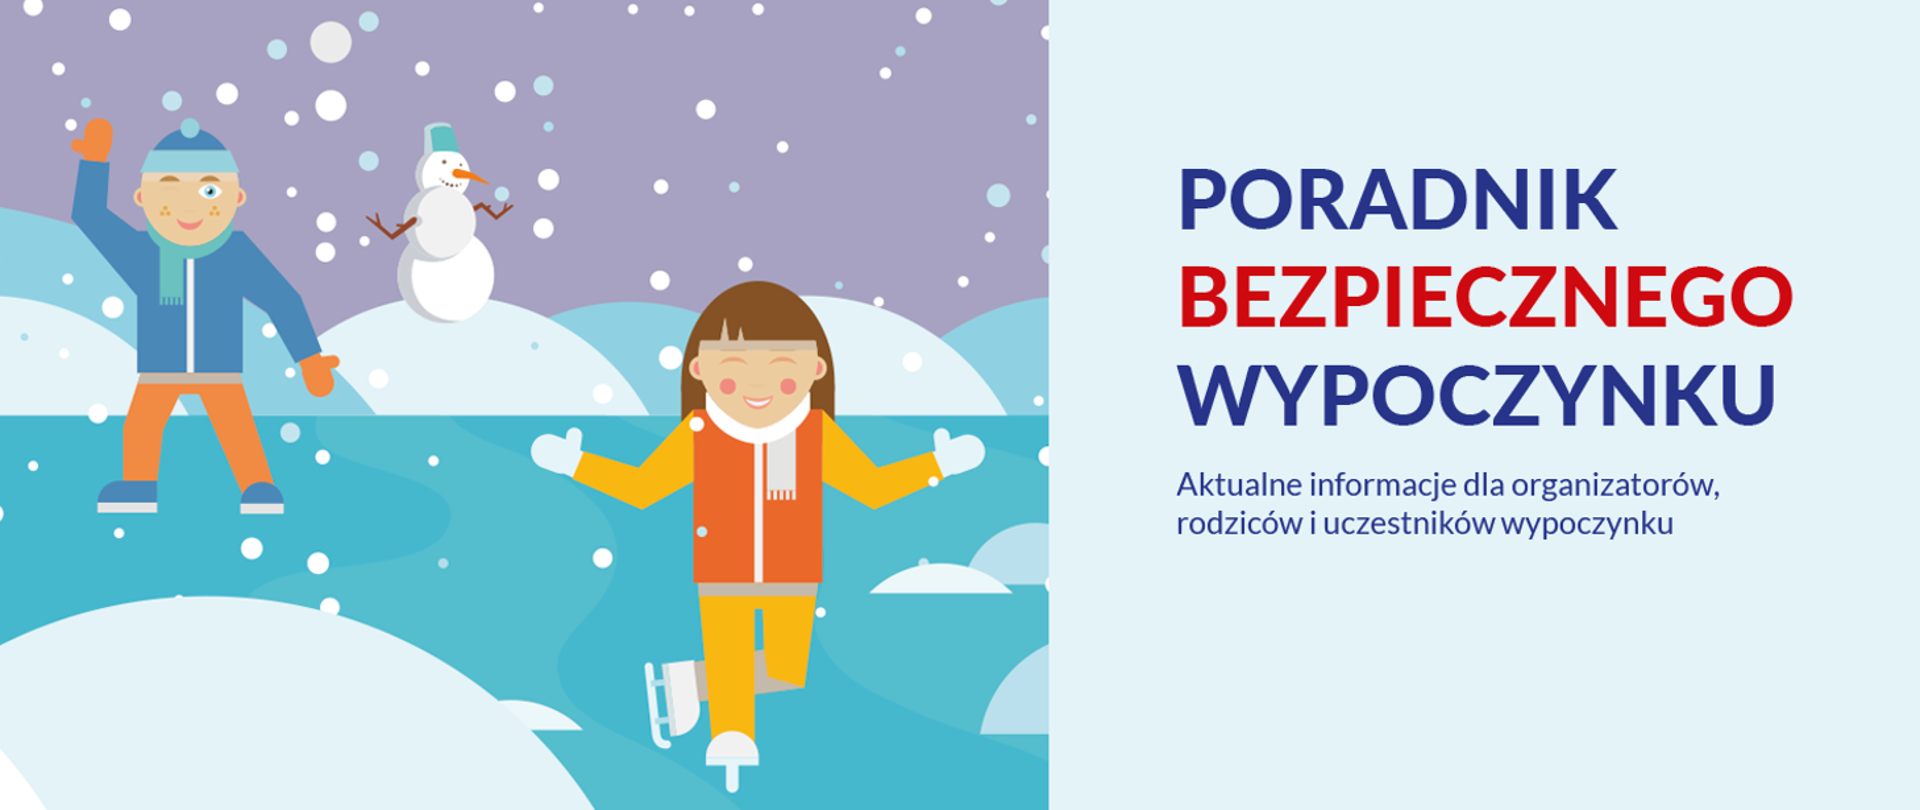 Obraz przedstawia animację dzieci bawiących się na lodzie, z prawej strony napis "poradnik bezpiecznego wypoczynku, aktualne informacje dla organizatorów, rodziców i uczestników wypoczynku"